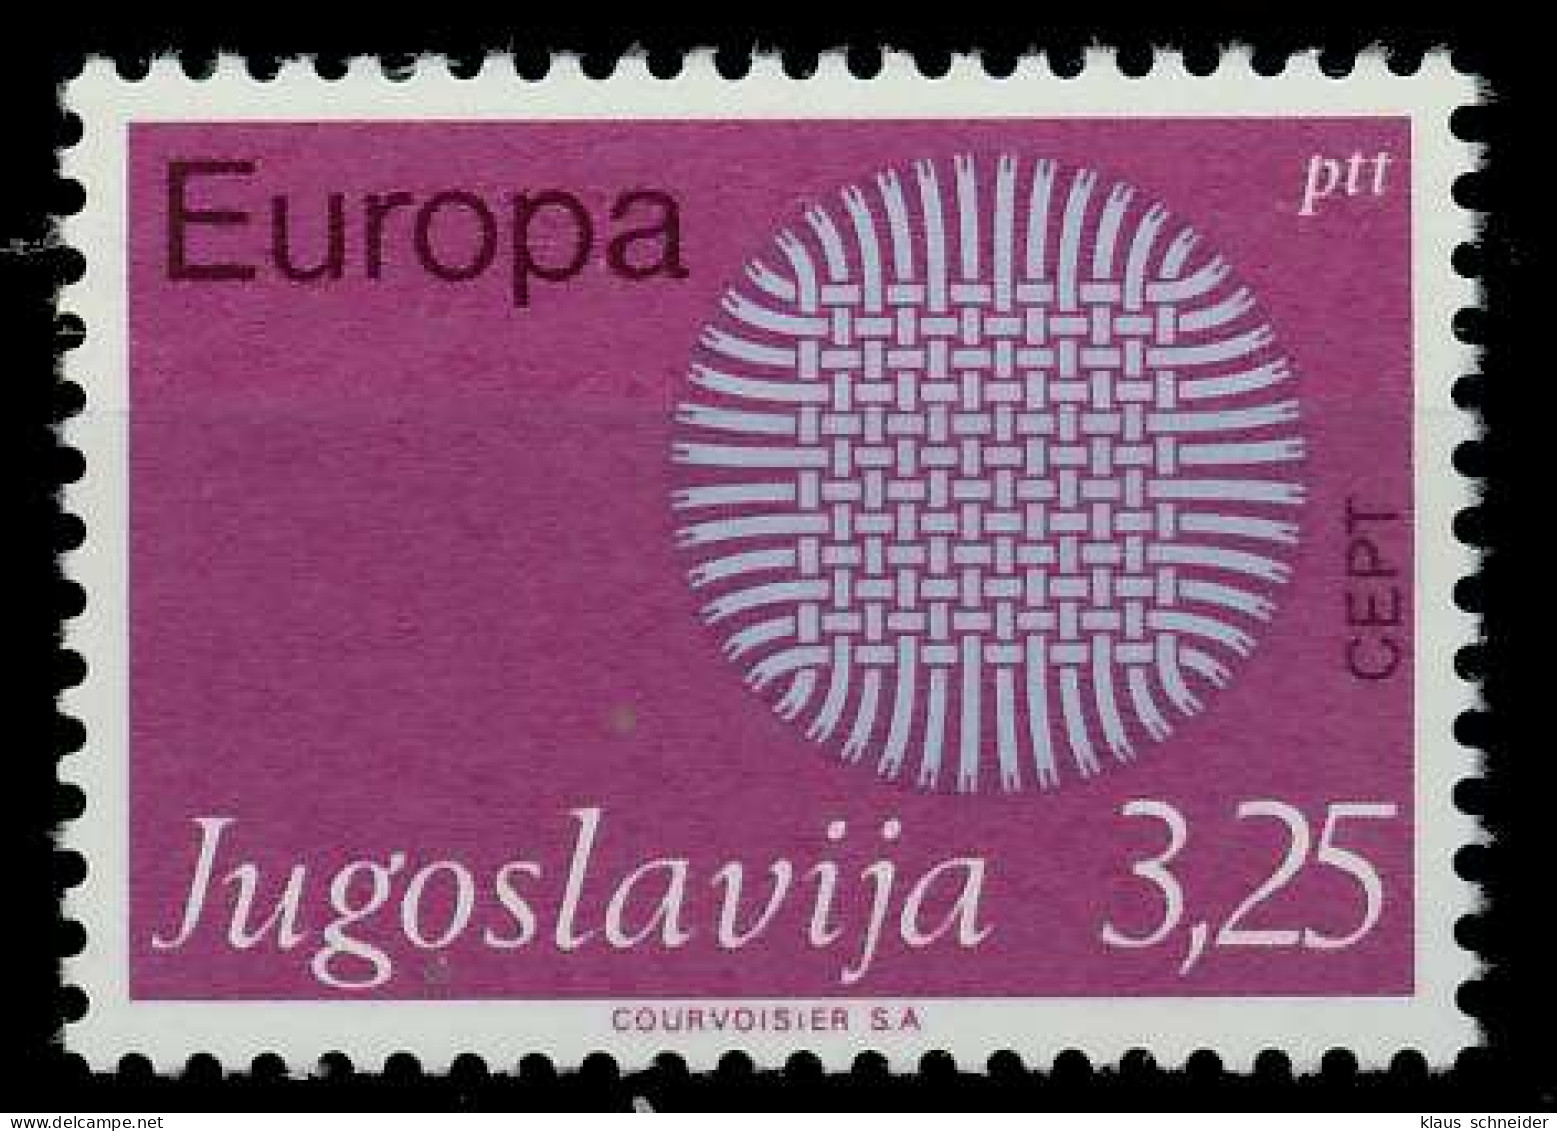 JUGOSLAWIEN 1970 Nr 1380 Postfrisch SA5ED16 - Neufs